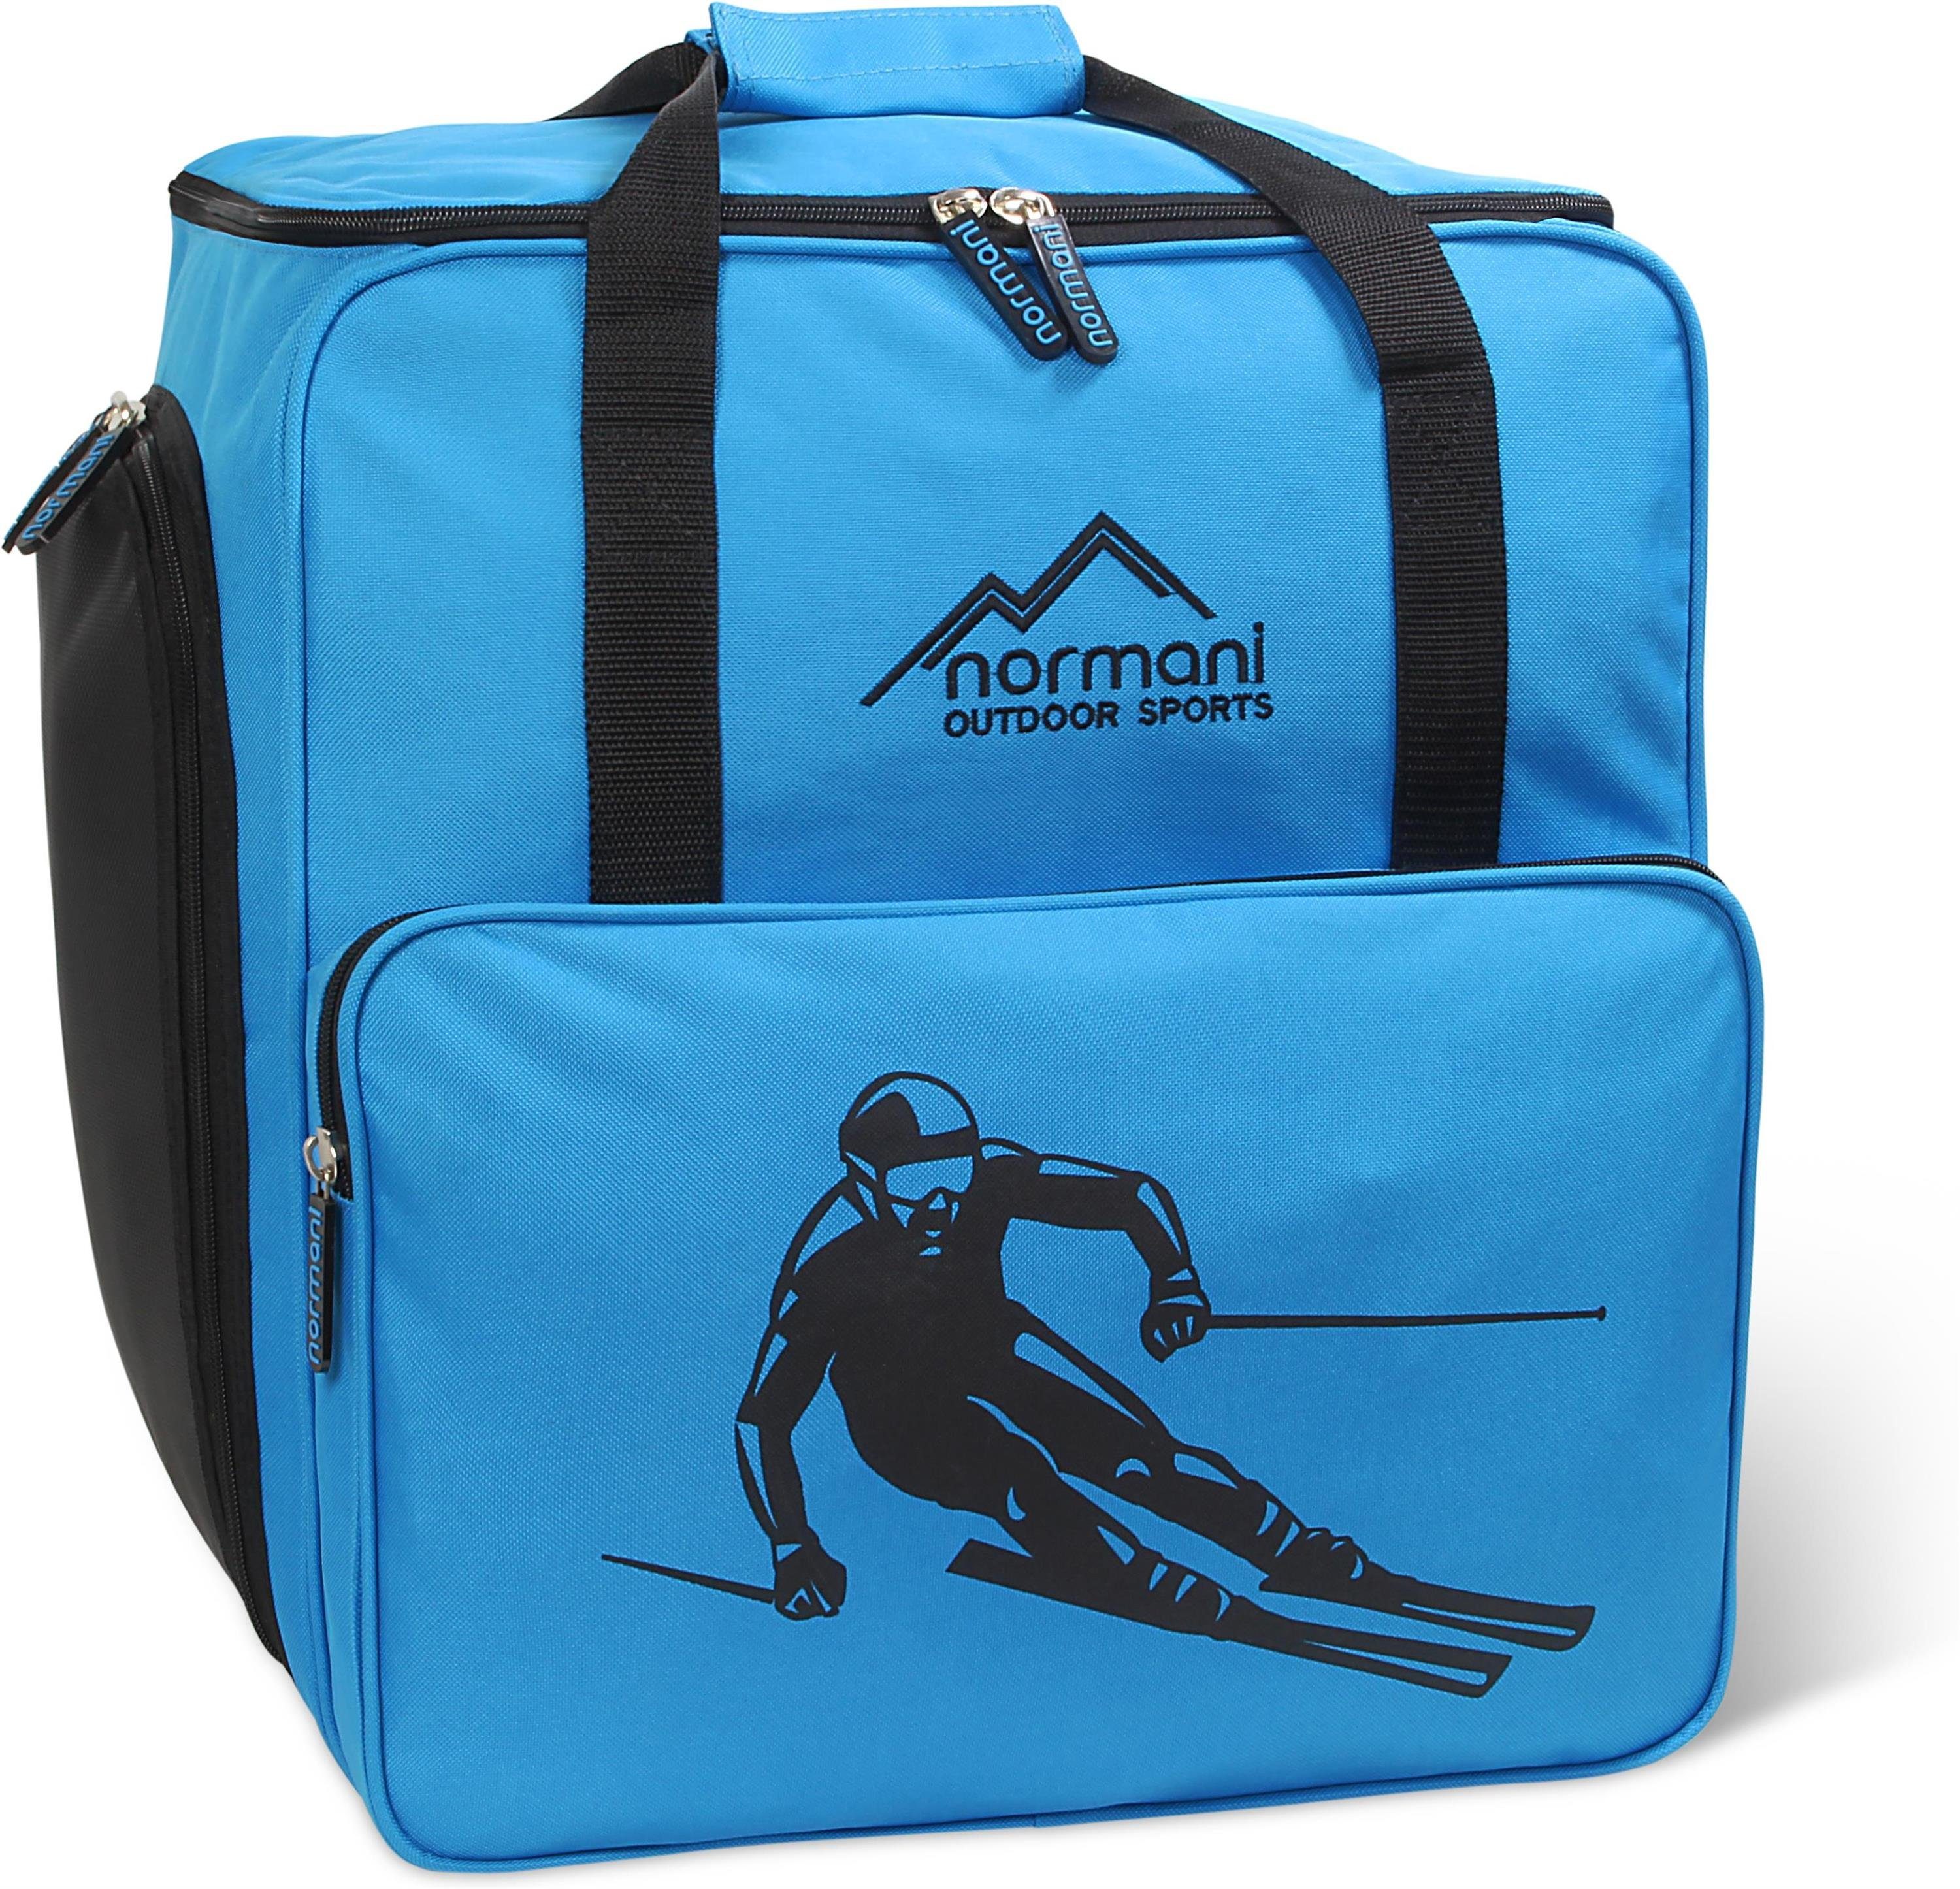 Rollschuhtasche Blau Skischuhtasche Snowboardschuhtasche Skitasche - oder Depo, Alpine 53 l und normani Sporttasche Rucksackfunktion Helmfach separatem mit